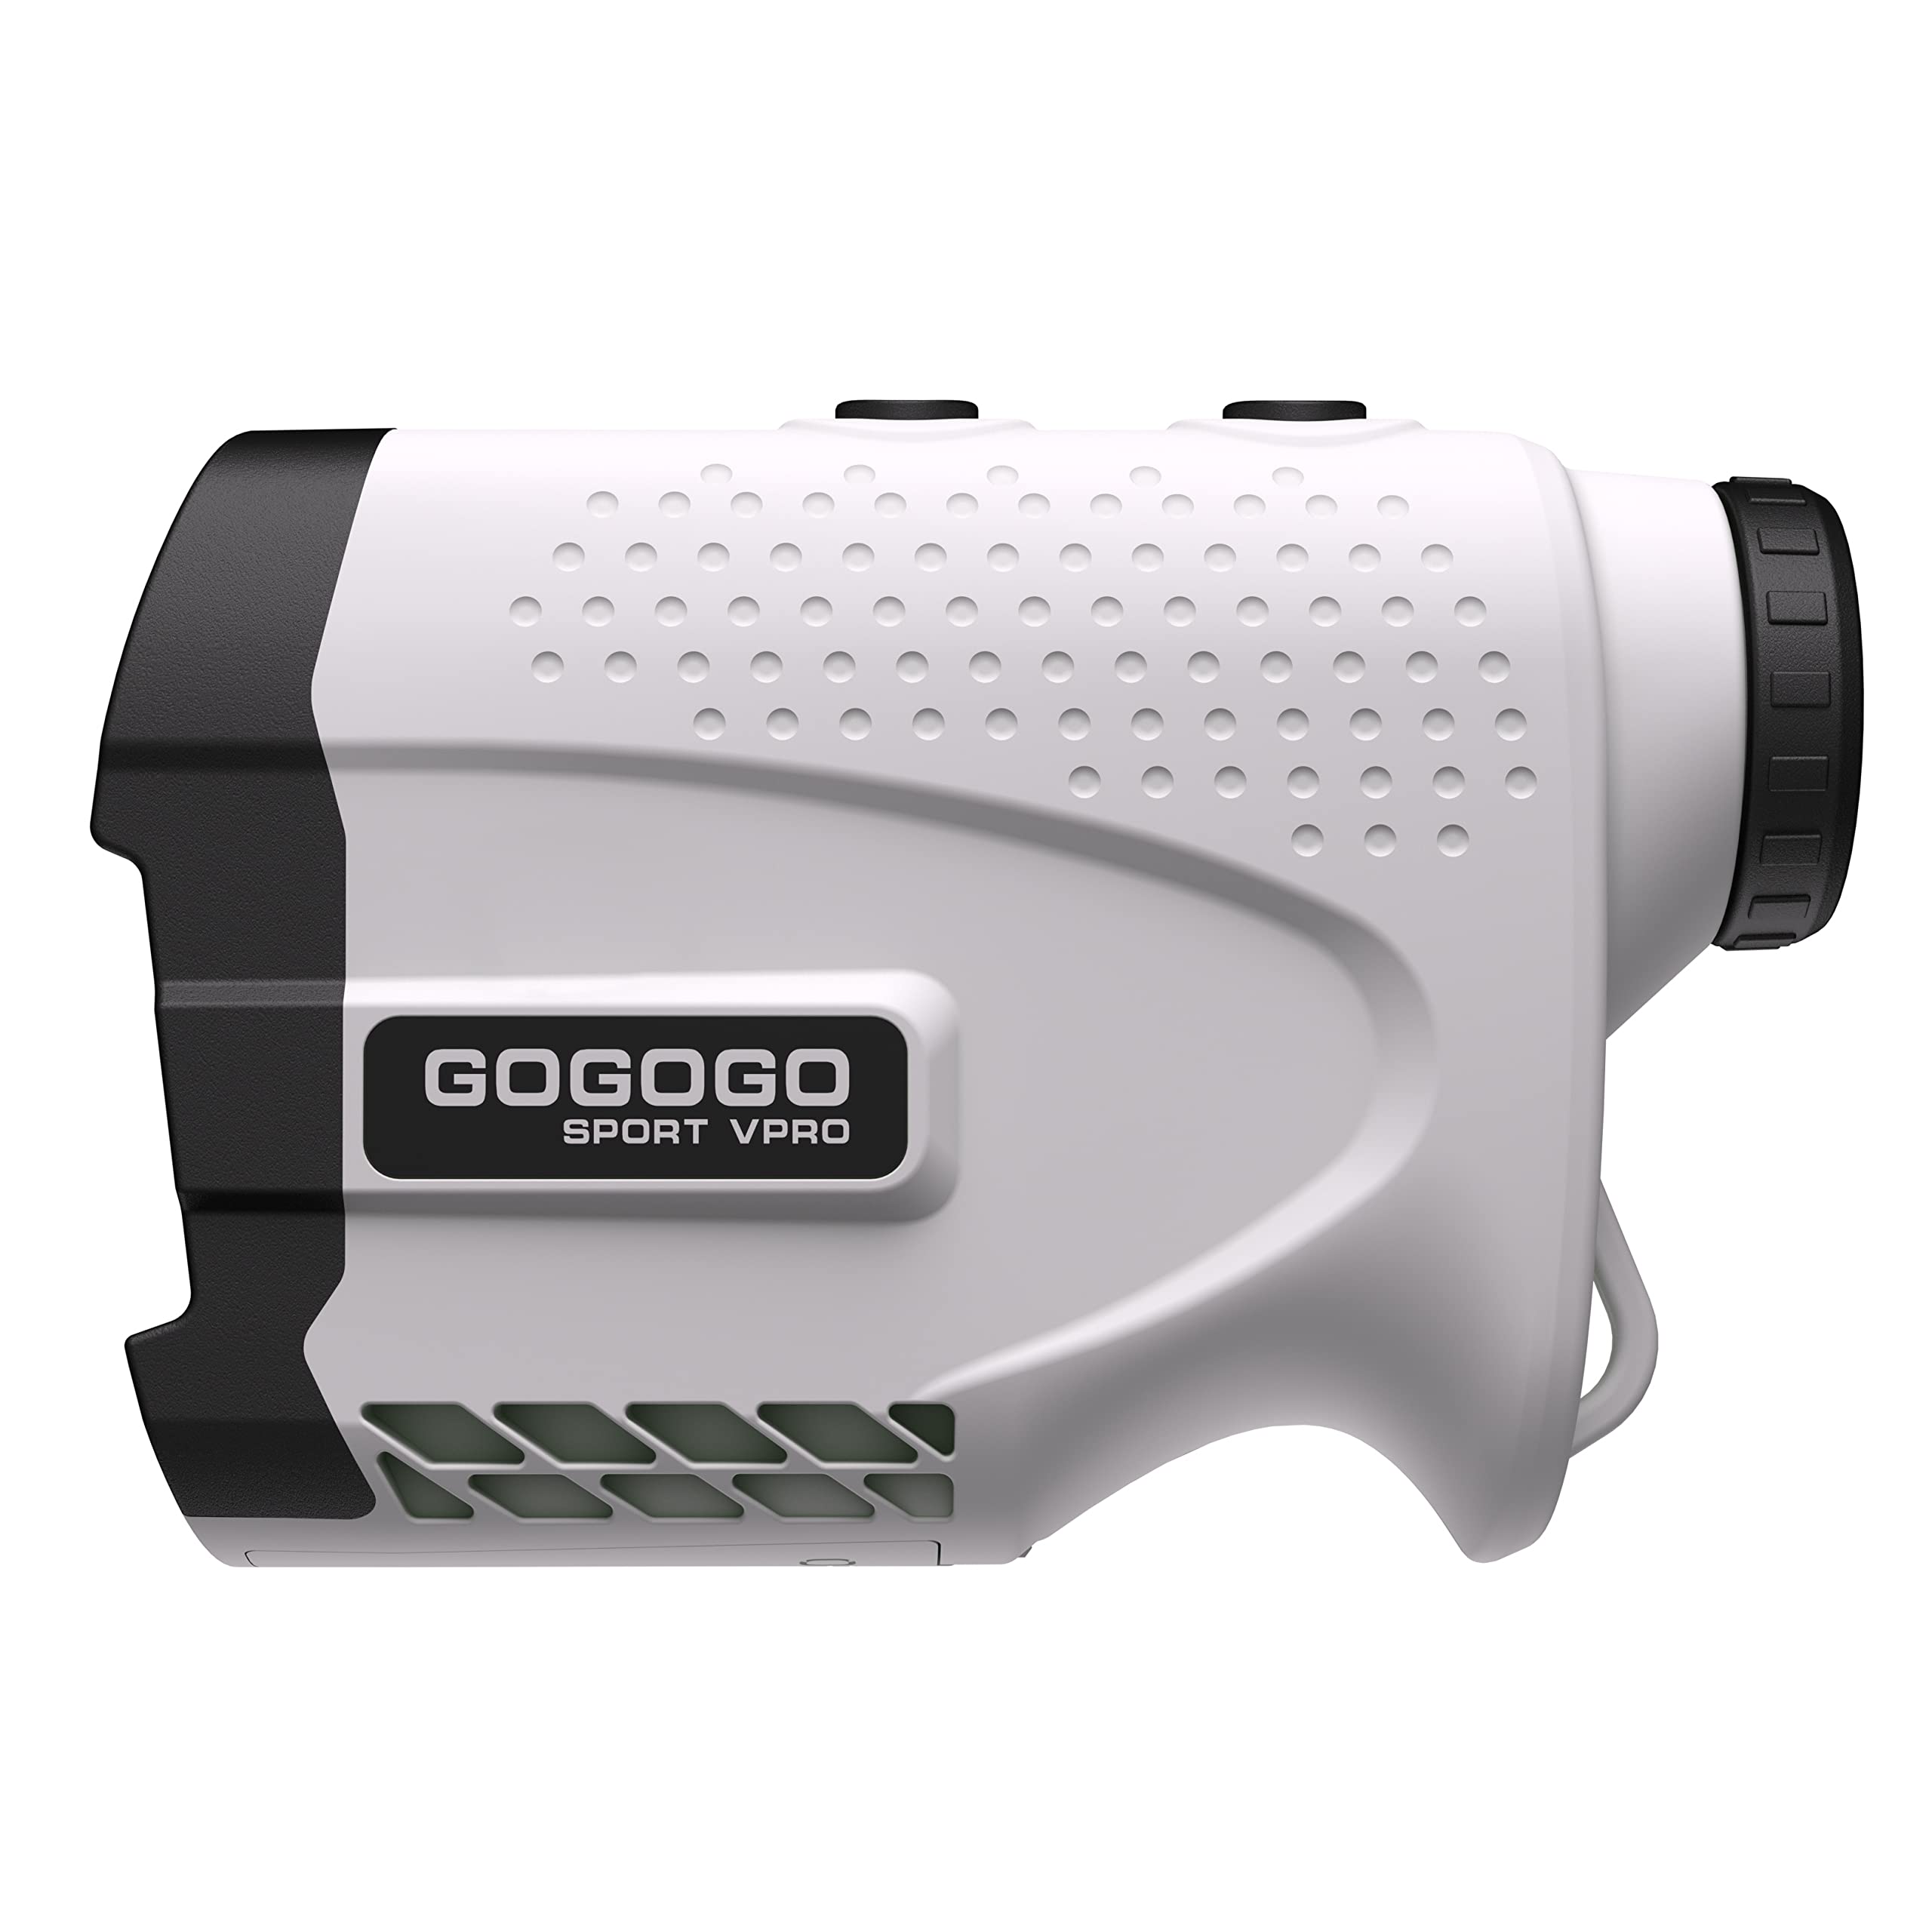  Gogogo Sport Vpro Télémètre laser pour le golf et la chasse Télémètre de mesure de distance avec verrouillage de mât de drapeau de haute précision Fonction de vibration Mode pente Balayage...